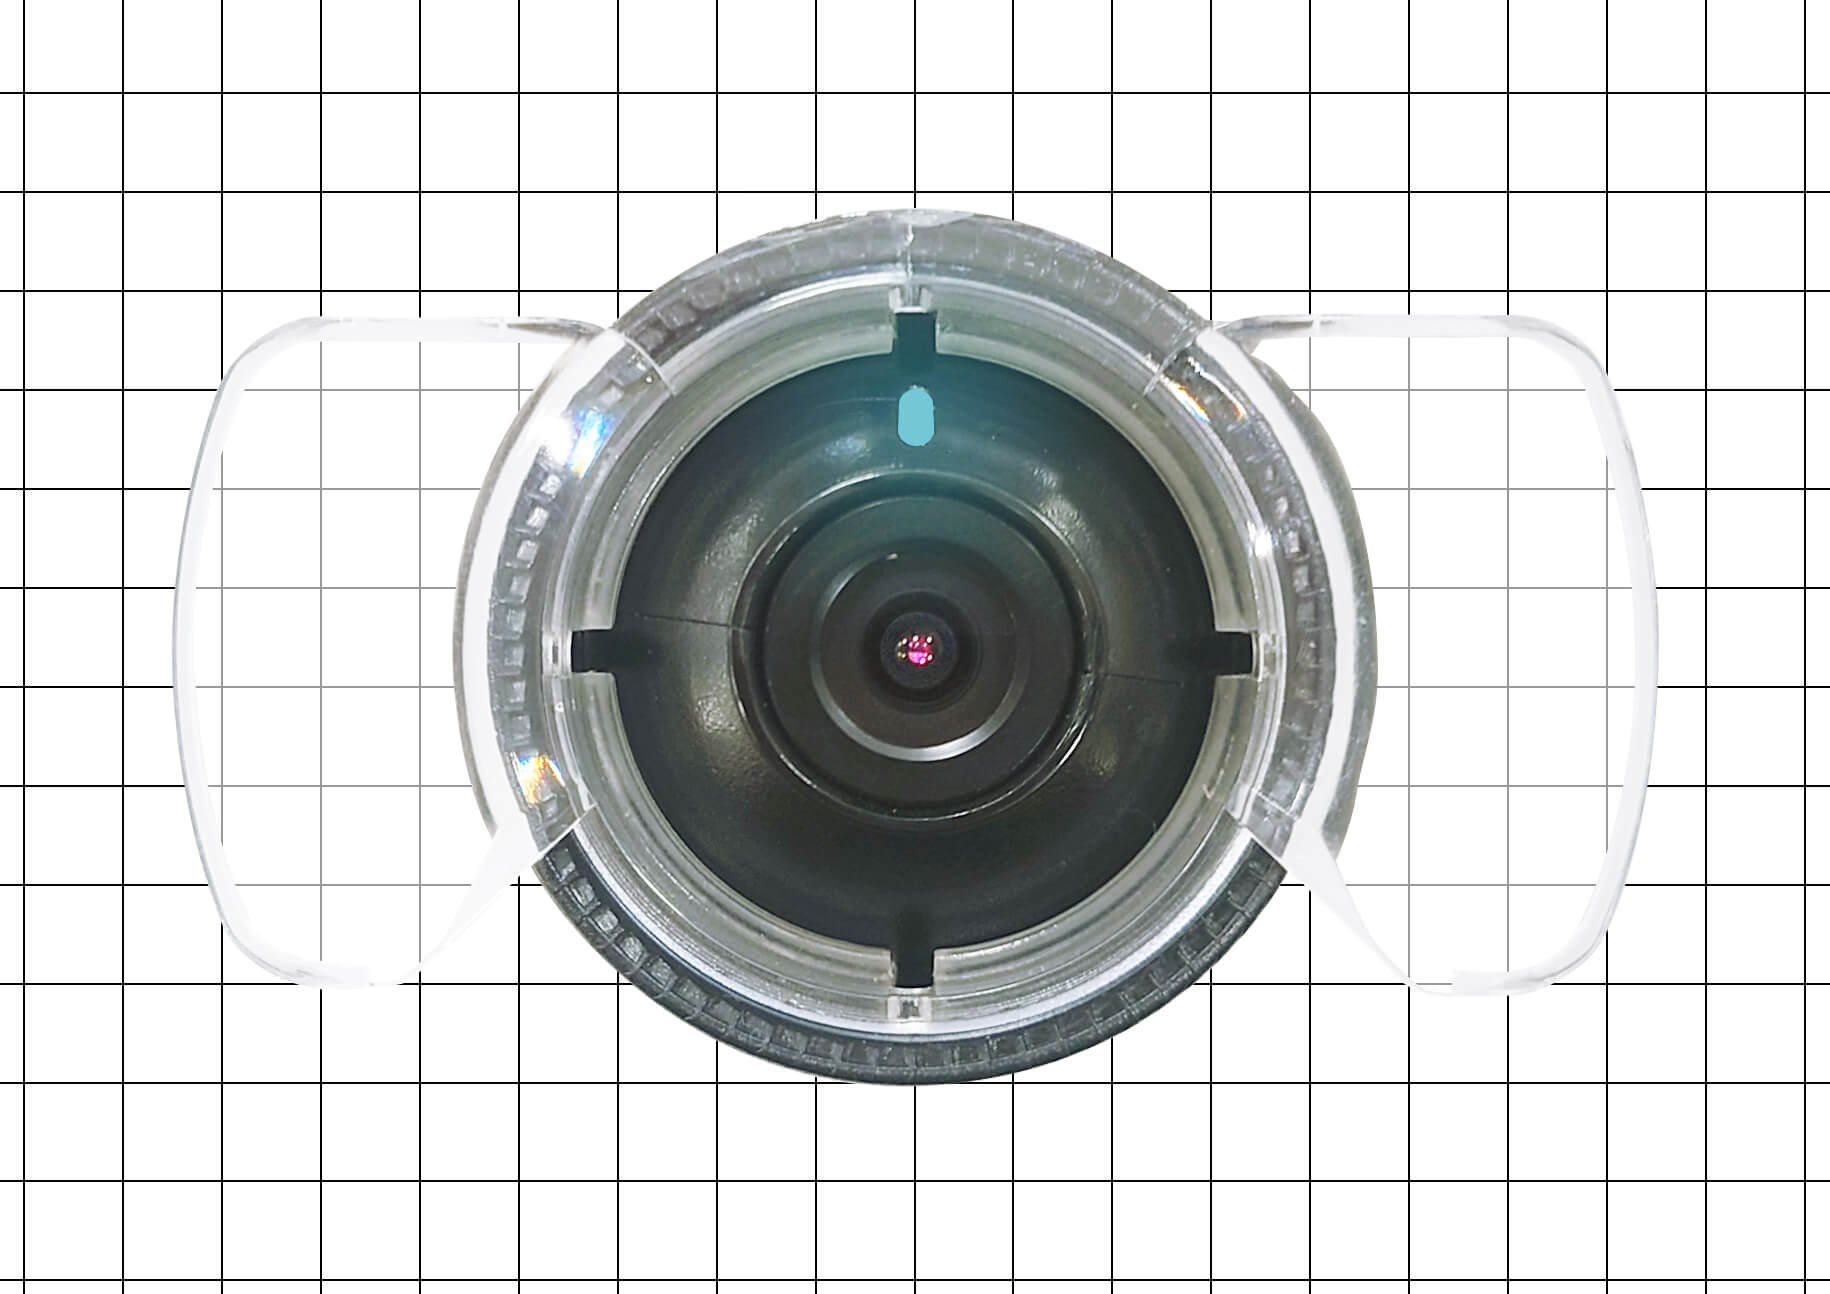 スマートレコWHSR-S100 カメラの向き-正面 Aタイプ